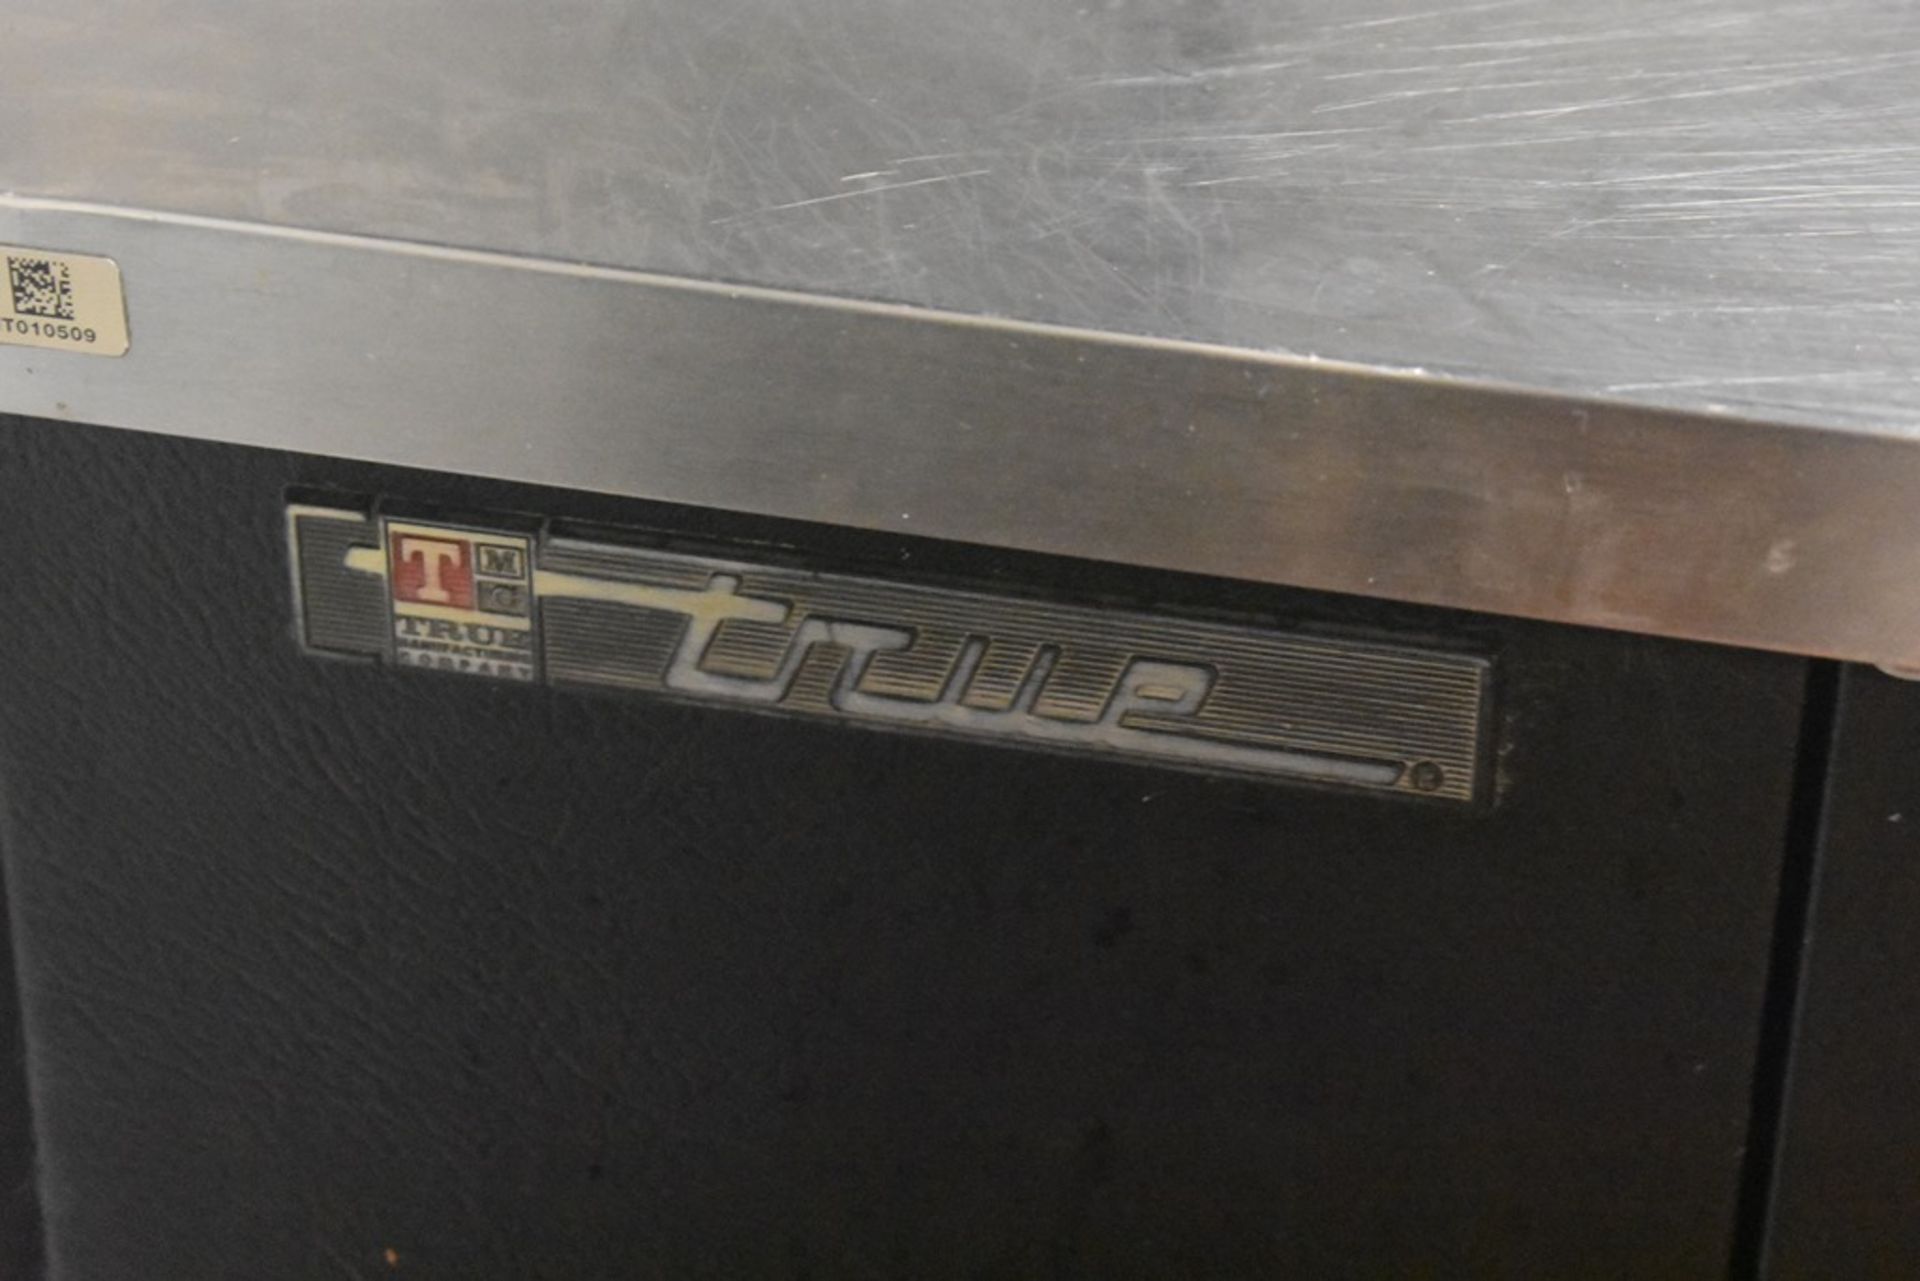 Mesa de trabajo refrigerada con cubierta en acero inoxidable marca True, modelo TBB-3, número de se - Image 17 of 20